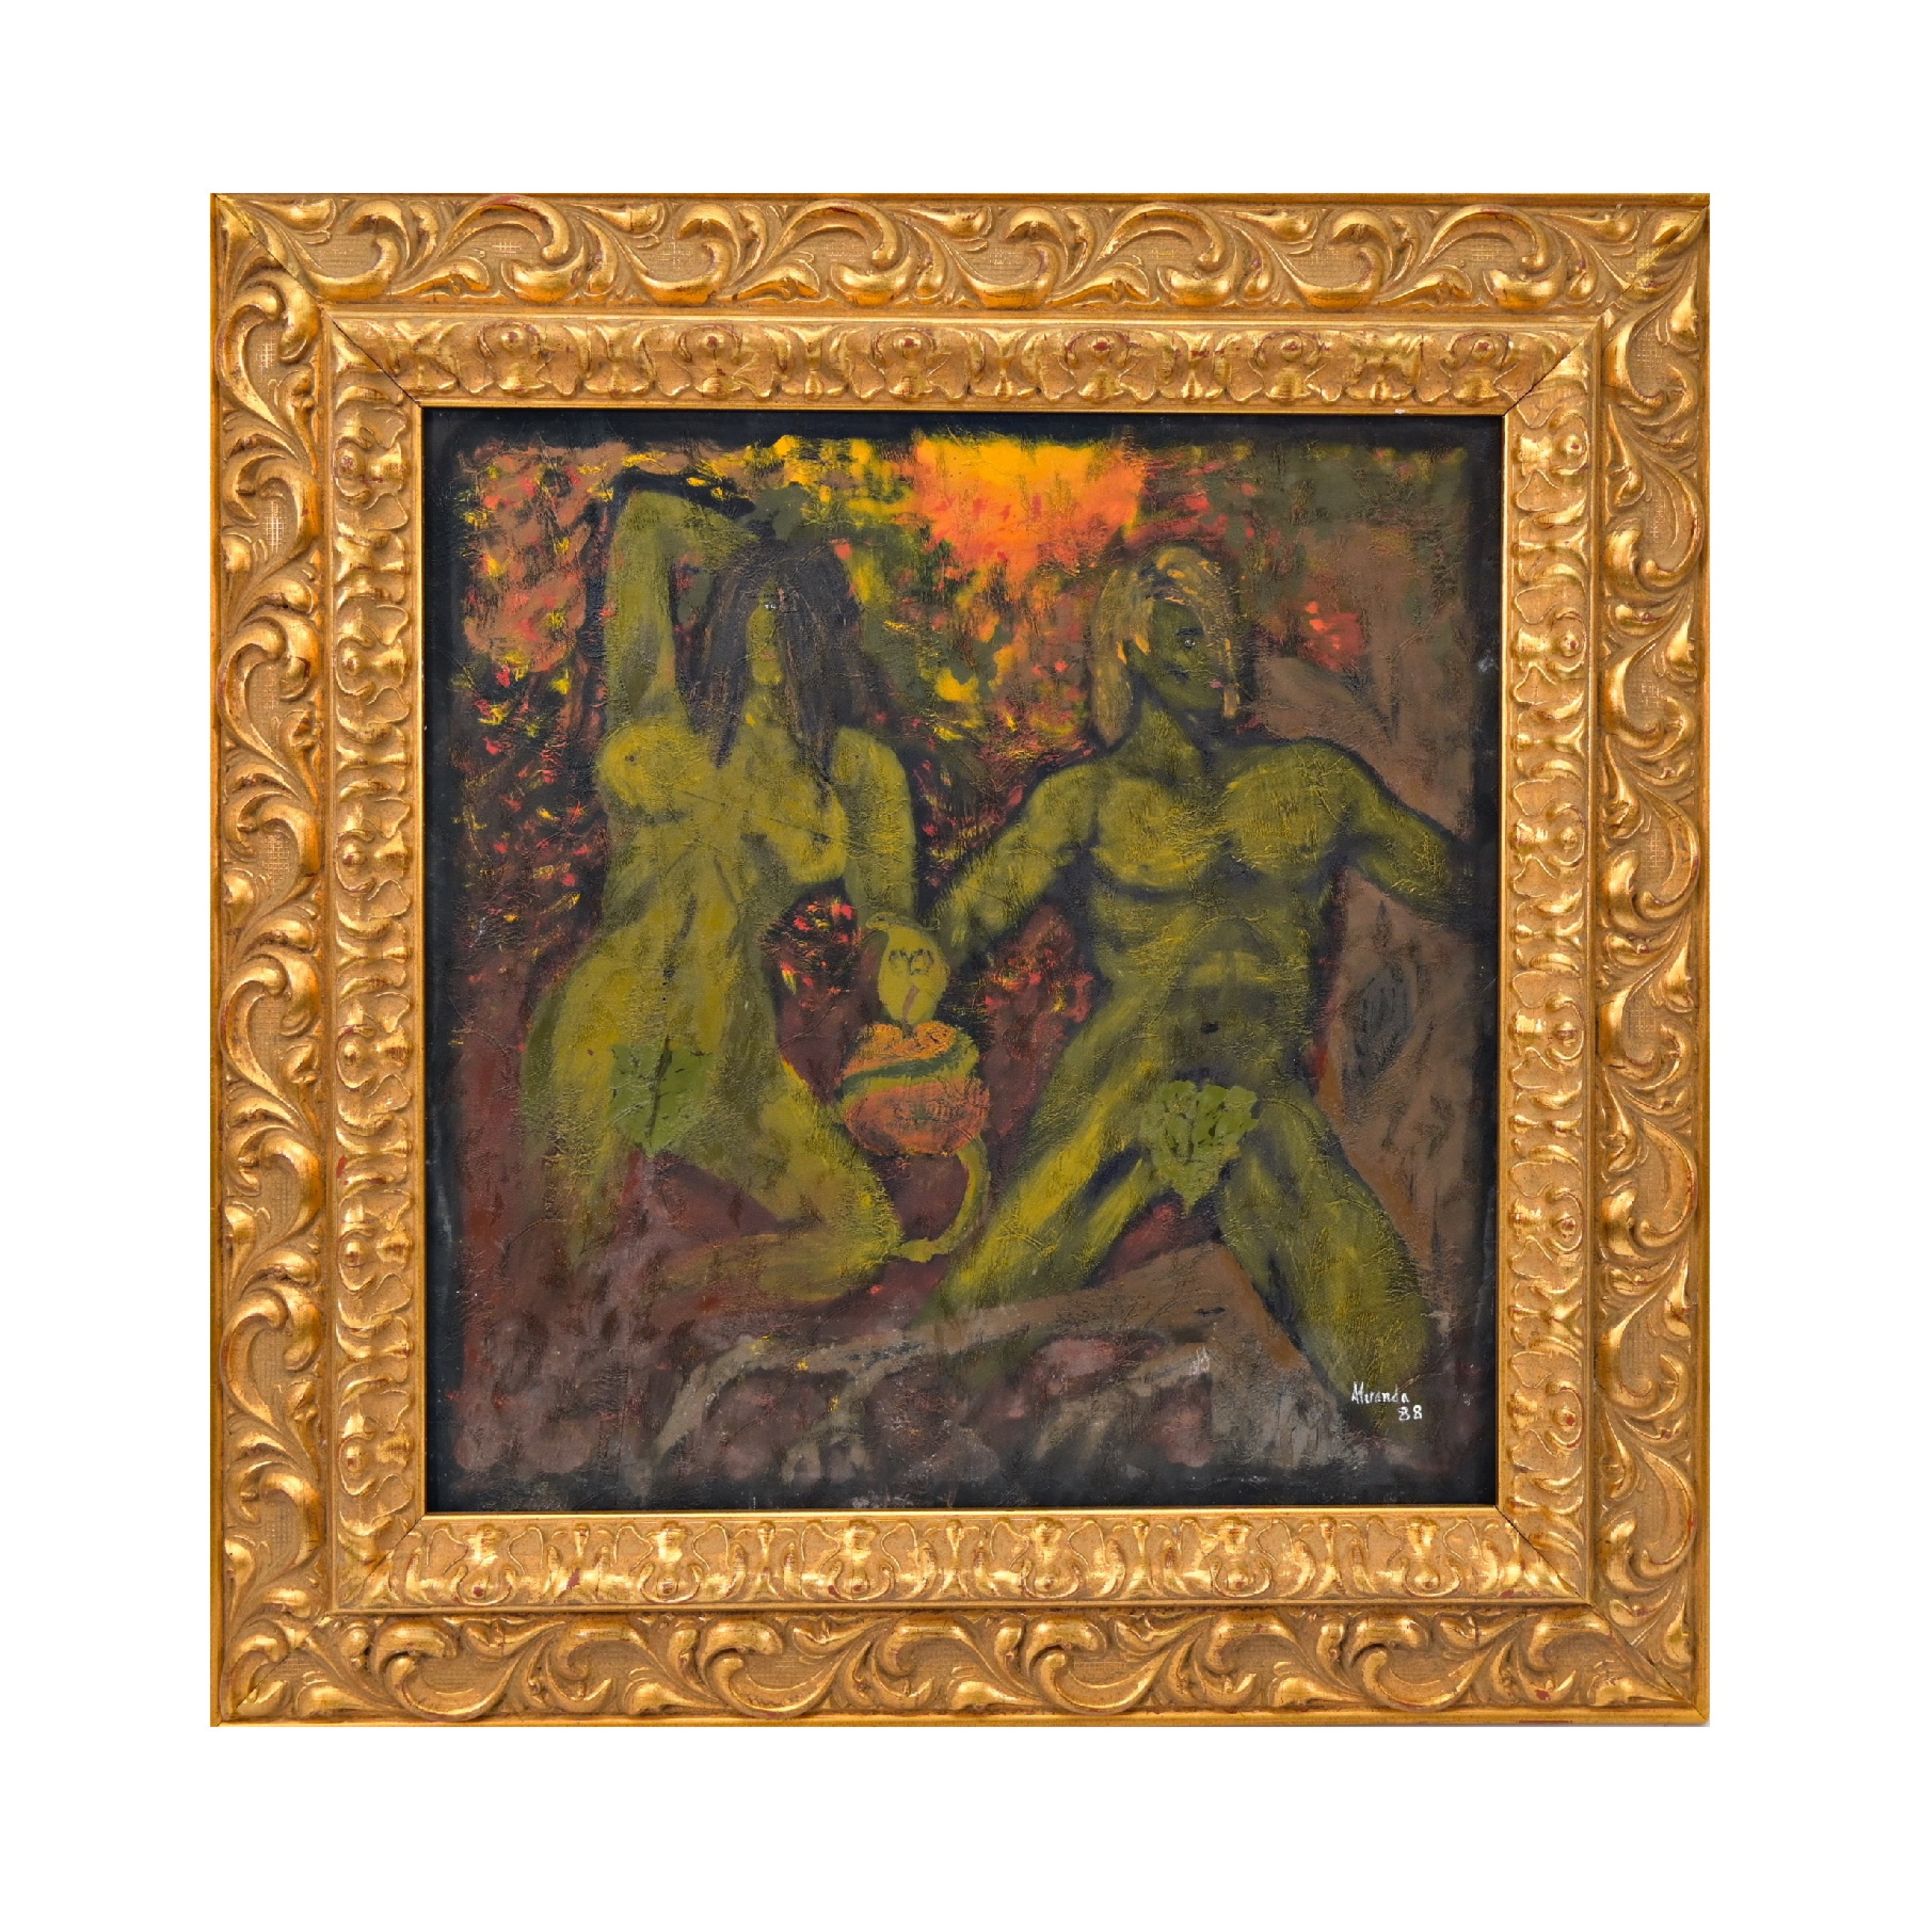 European painting, Miranda, "Forbidden fruit" 1988, oil on fabric.